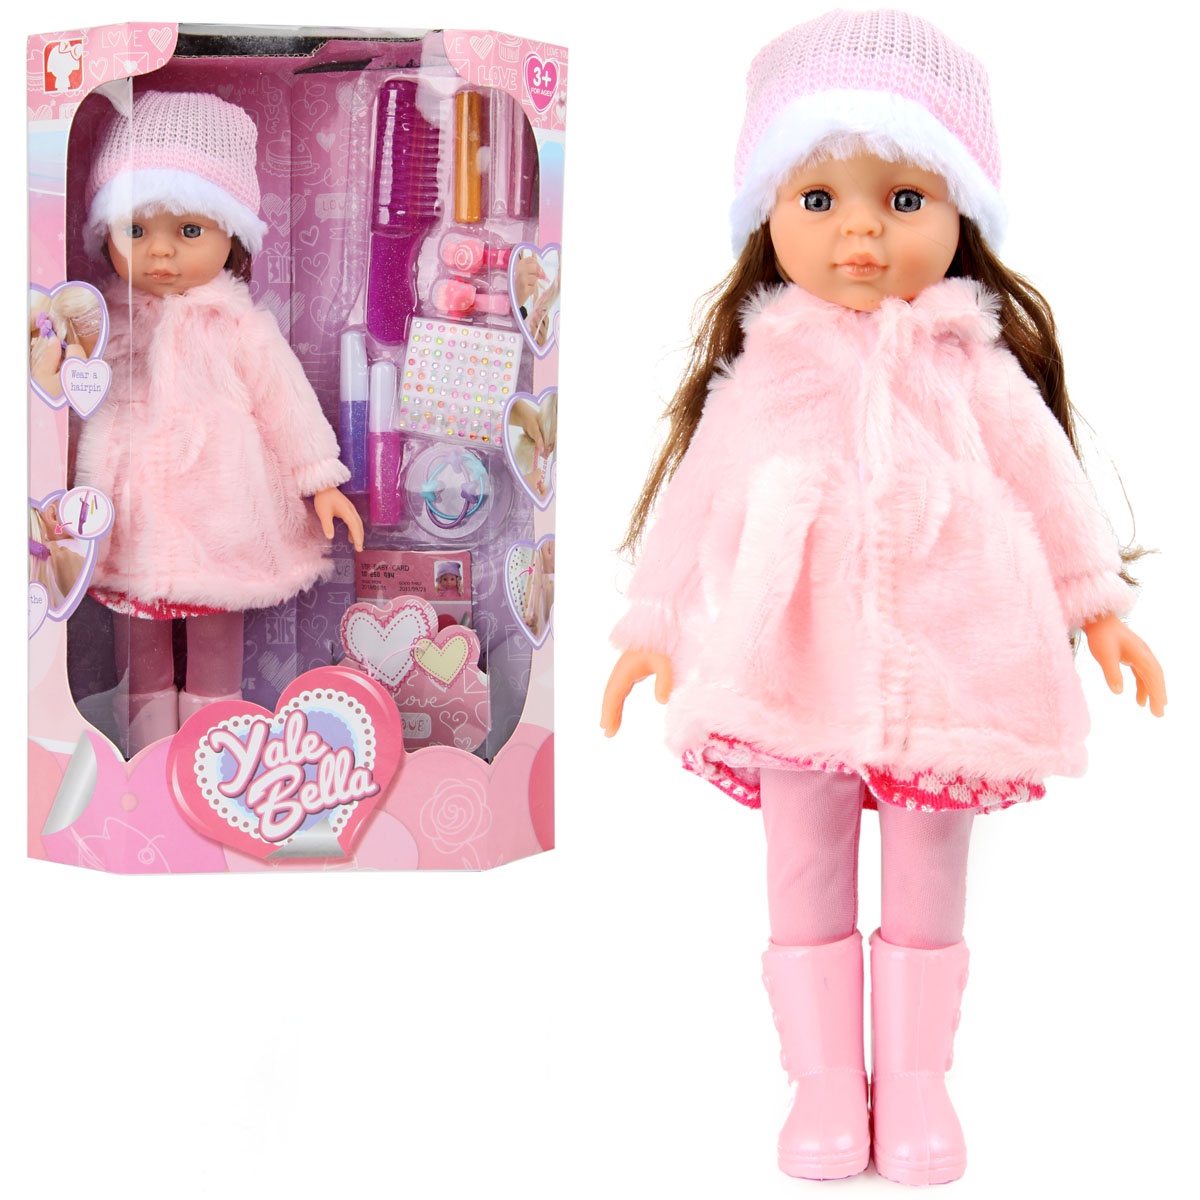 Куклы недорогие магазинов. Кукла - пупс, veld co. Кукла - пупс, veld co 43062. Кукла - пупс, veld co 43061. Кукла - пупс 30 см, veld co.